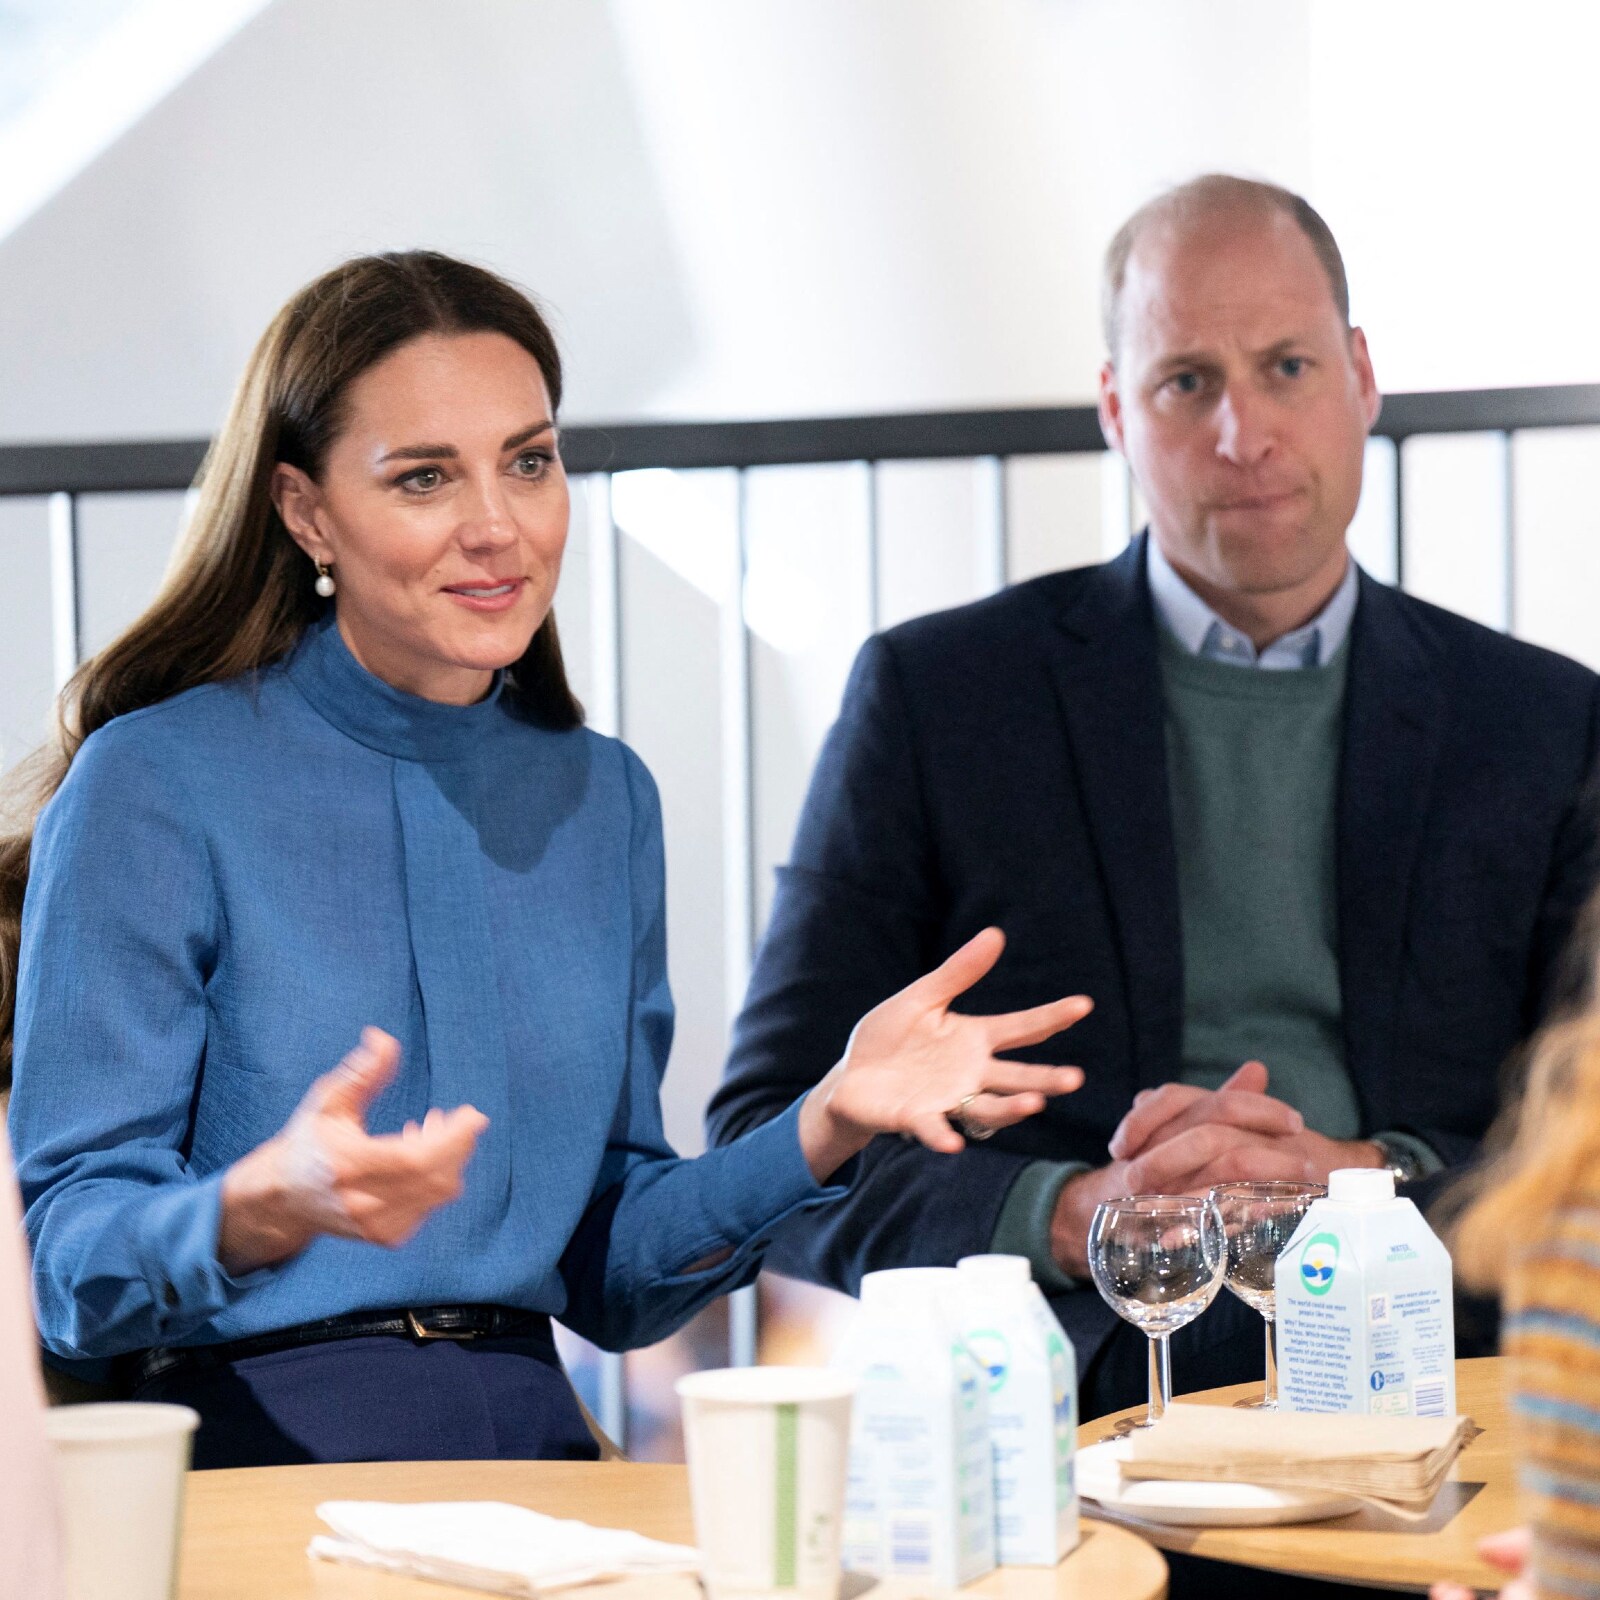 O príncipe britânico William e Catherine, duquesa de Cambridge, conversam com estudantes sobre saúde mental e bem-estar durante uma visita à Universidade de Glasgow em Glasgow, Escócia, Grã-Bretanha (Imagem: Reuters)